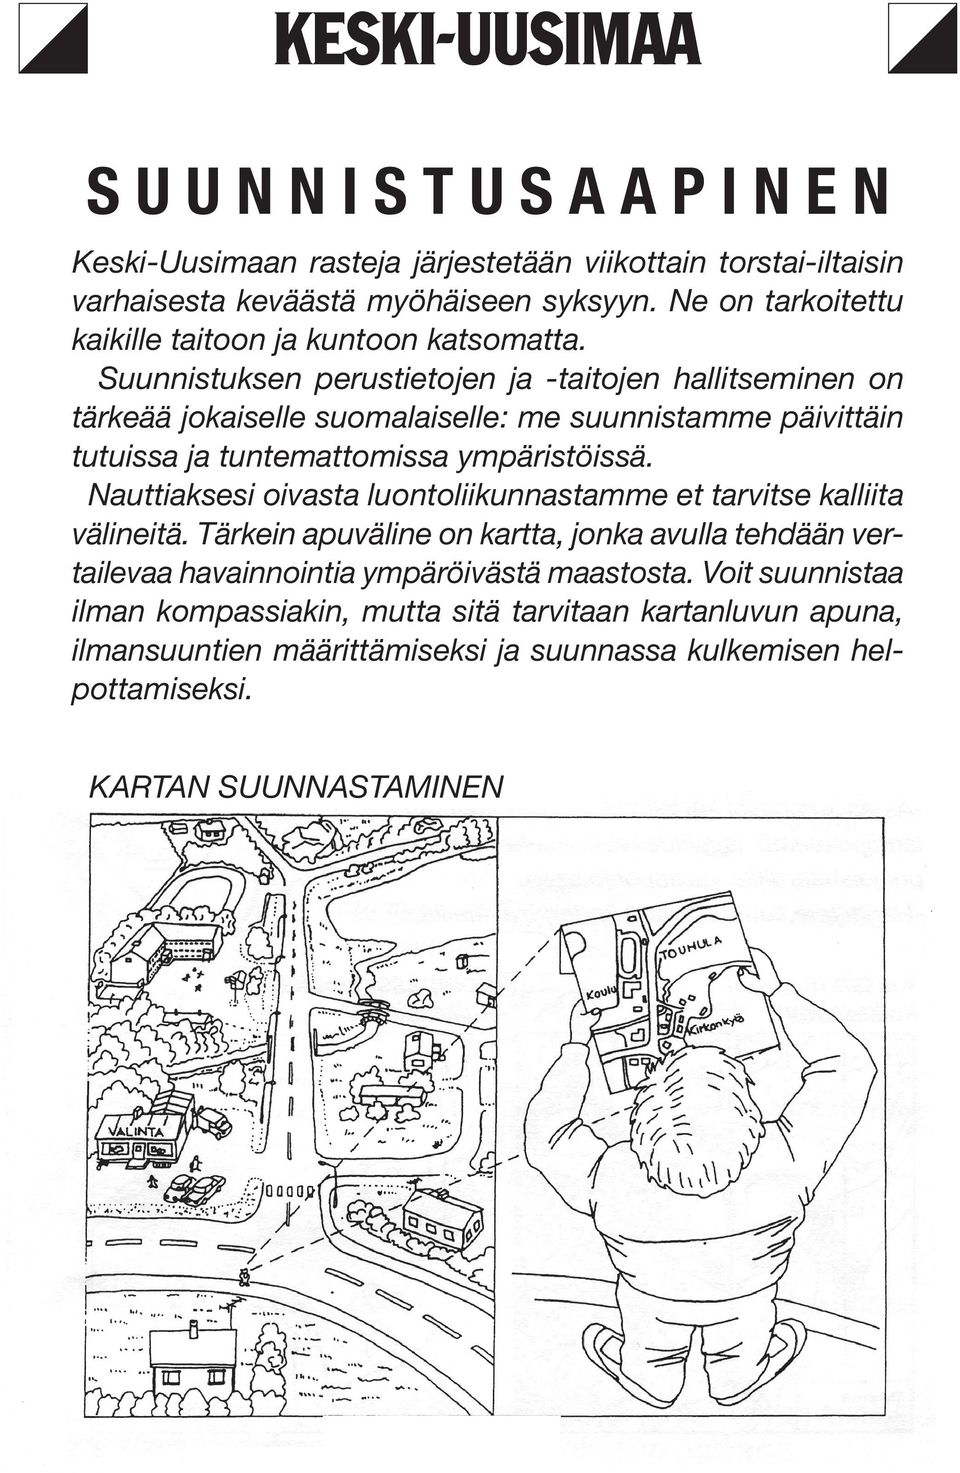 Suunnistuksen perustietojen ja -taitojen hallitseminen on tärkeää jokaiselle suomalaiselle: me suunnistamme päivittäin tutuissa ja tuntemattomissa ympäristöissä.